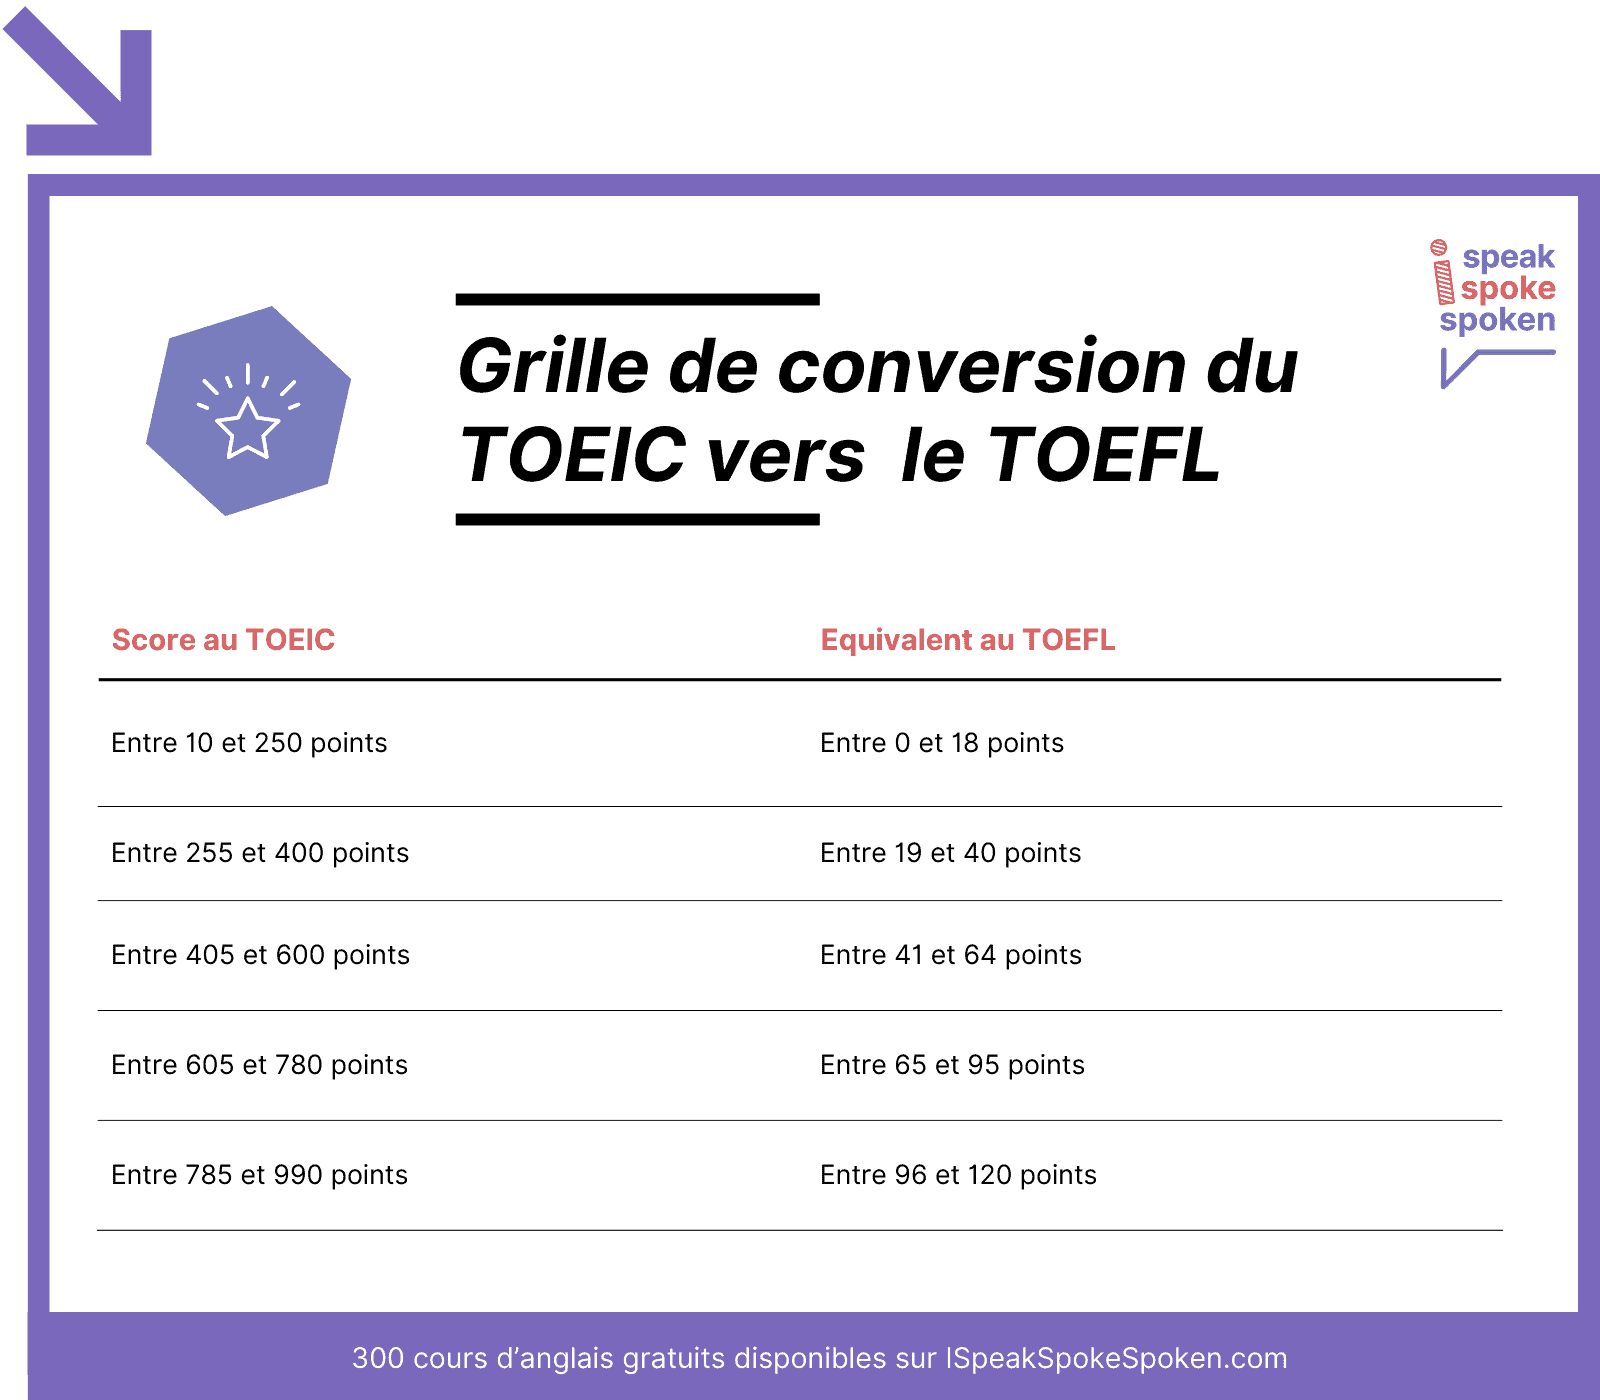 Grille de conversion du TOEIC vers le TOEFL